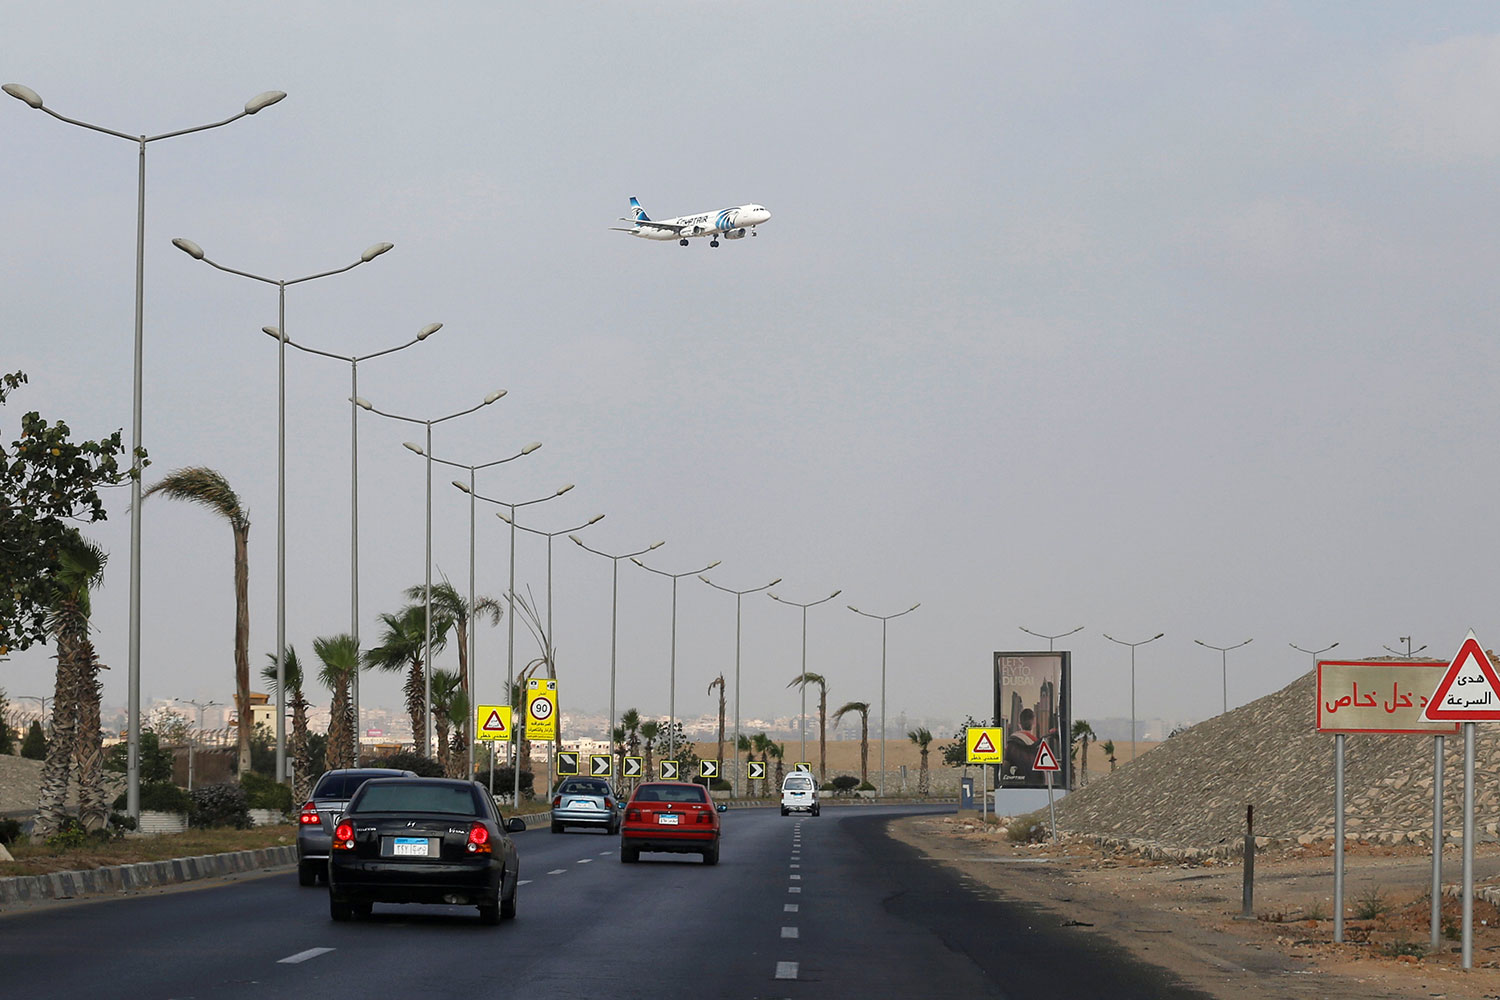 Egyptair confirma que el avión desaparecido 